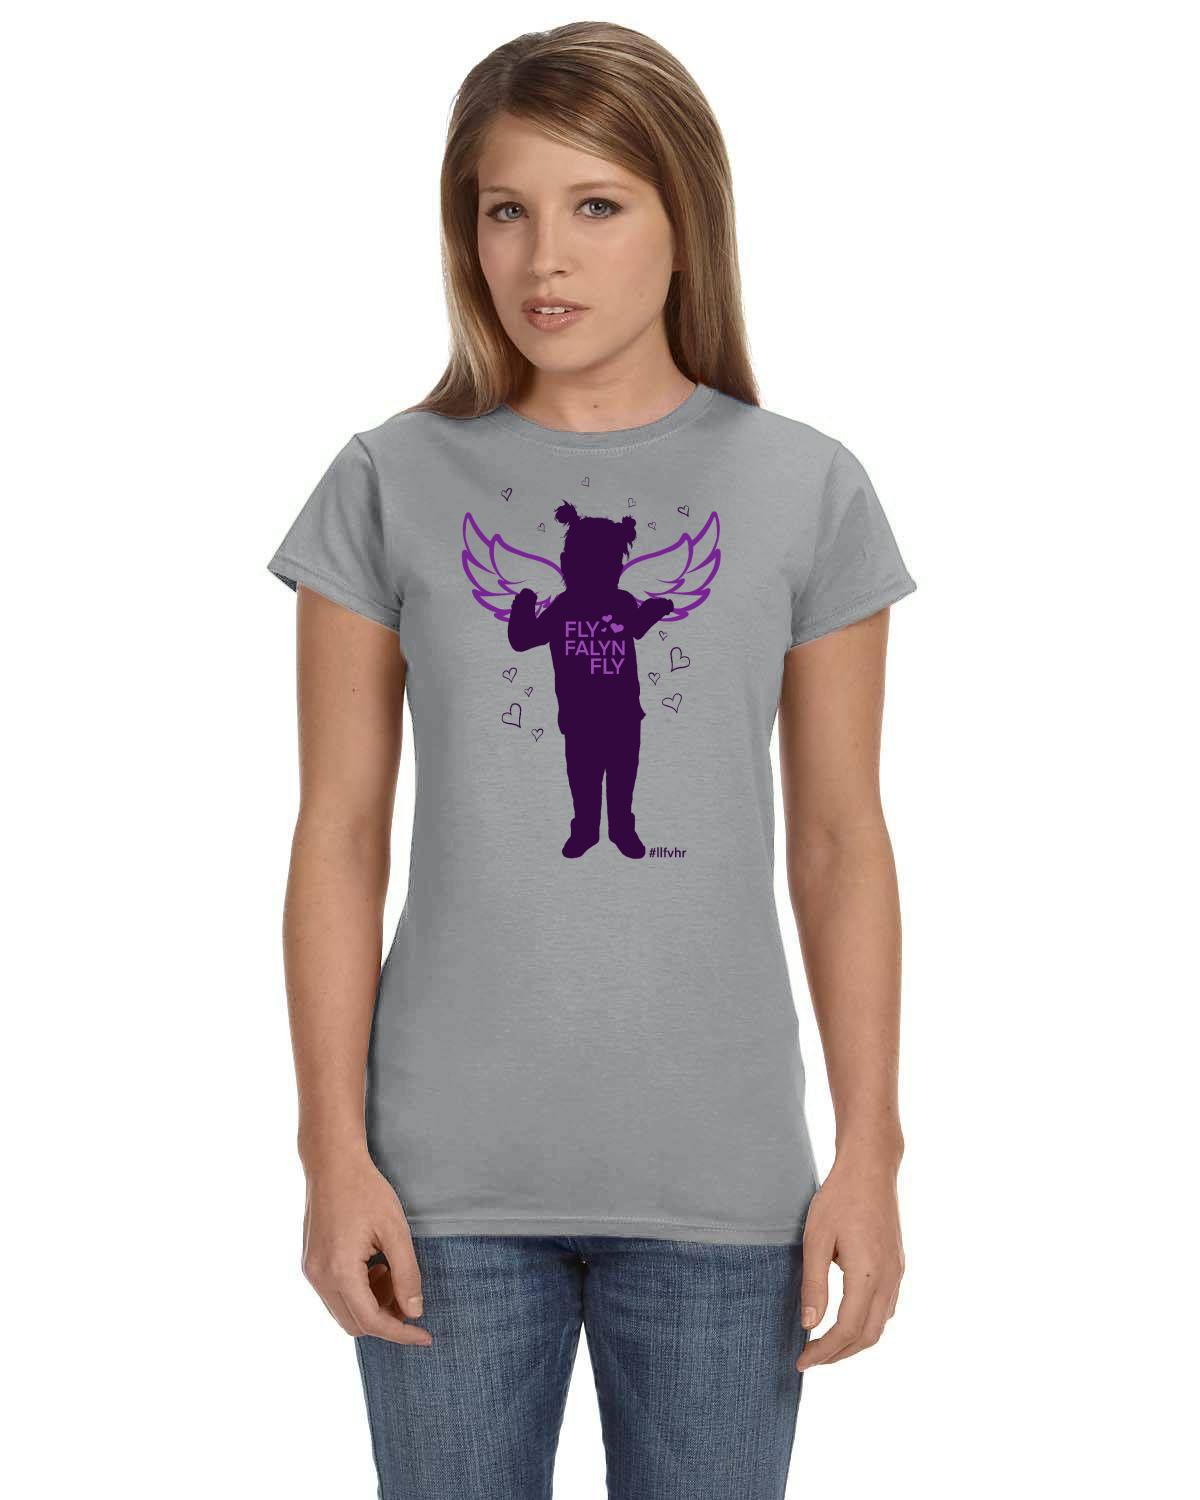 Fly Falyn Fly #llfvhr Gildan Ladies' Softstyle 7.5 oz./lin. yd. Fitted T-Shirt | G640L